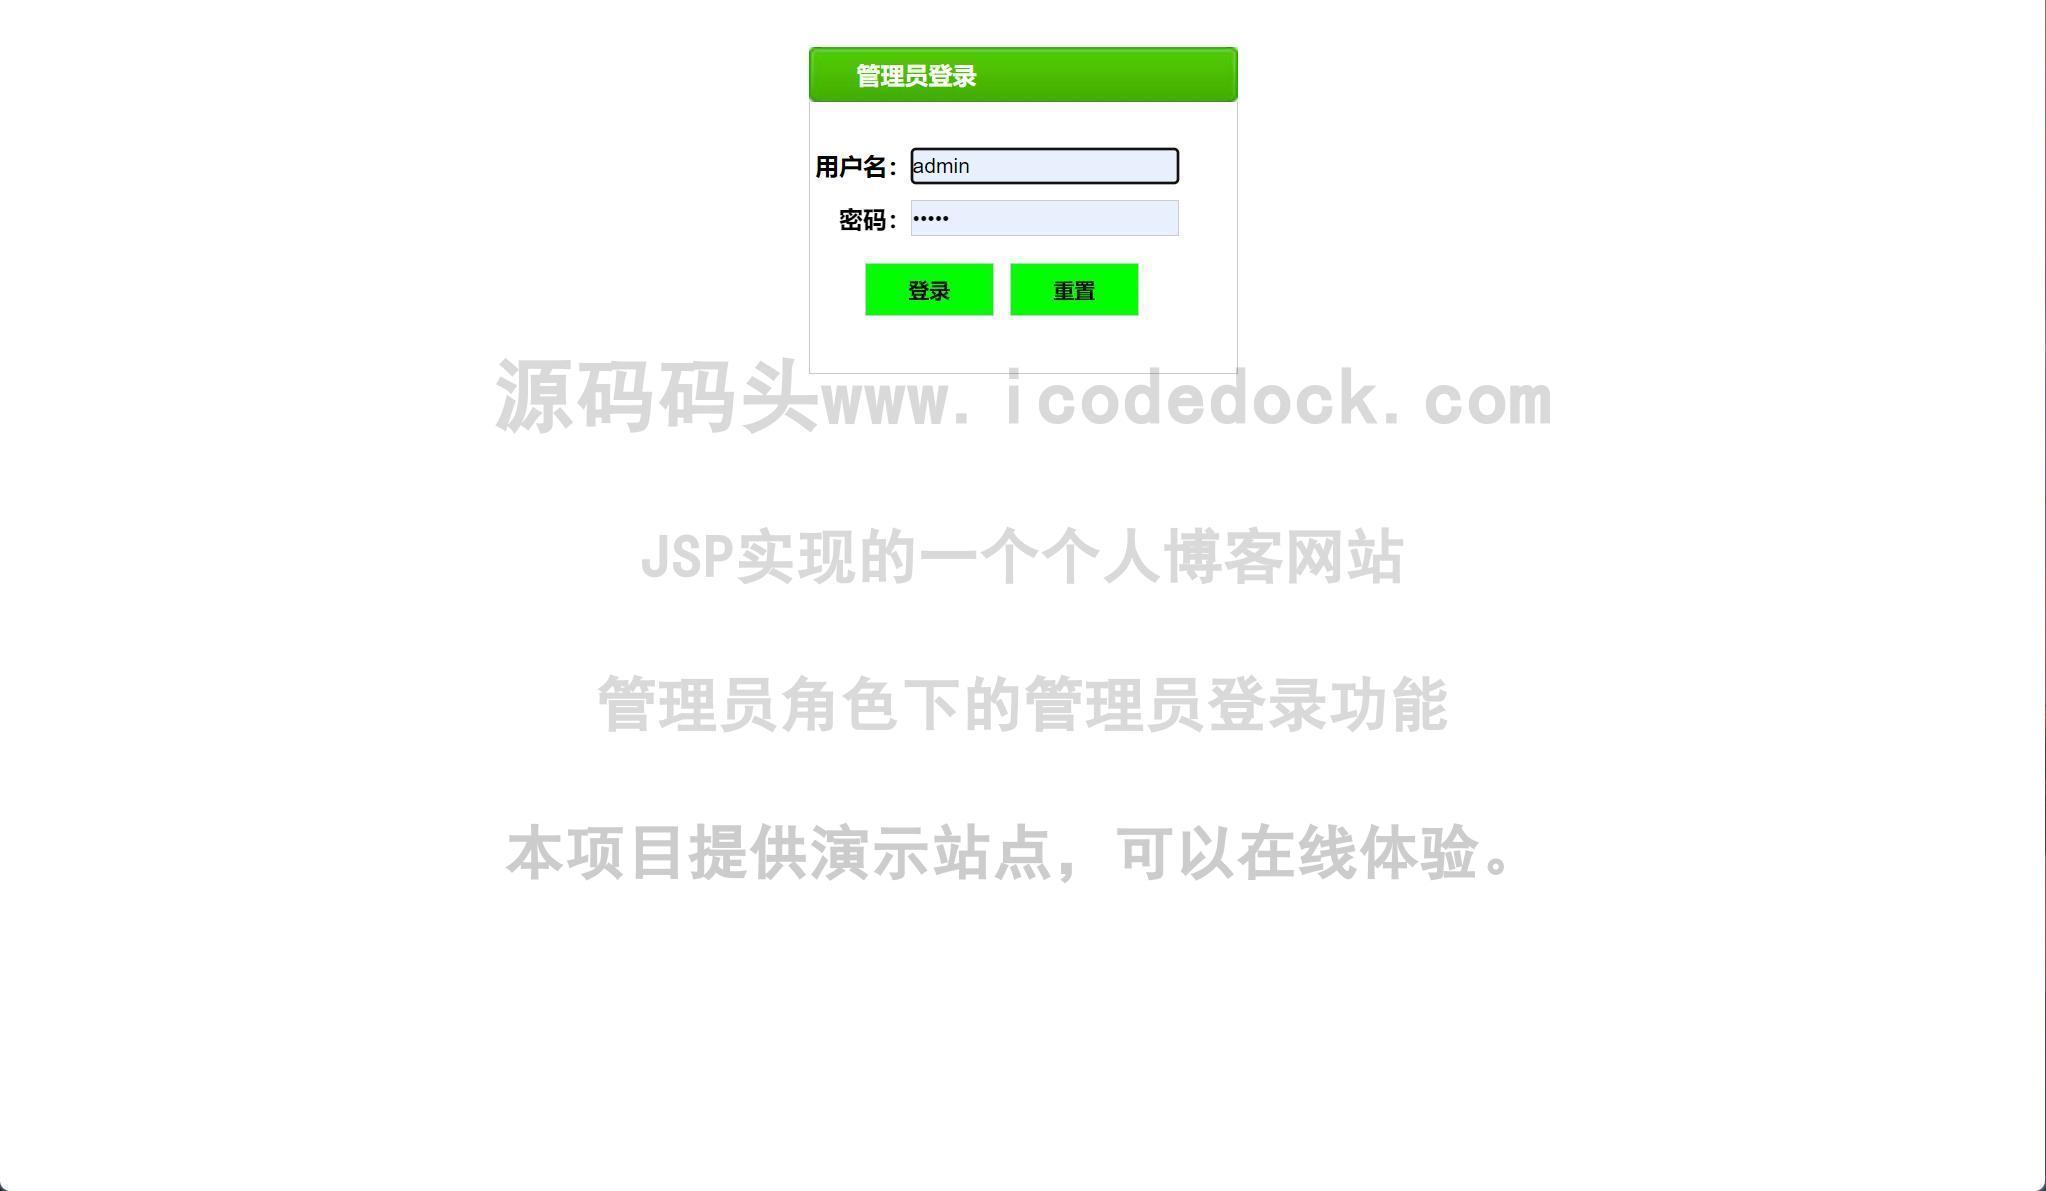 源码码头-JSP实现的一个个人博客网站-管理员角色-管理员登录